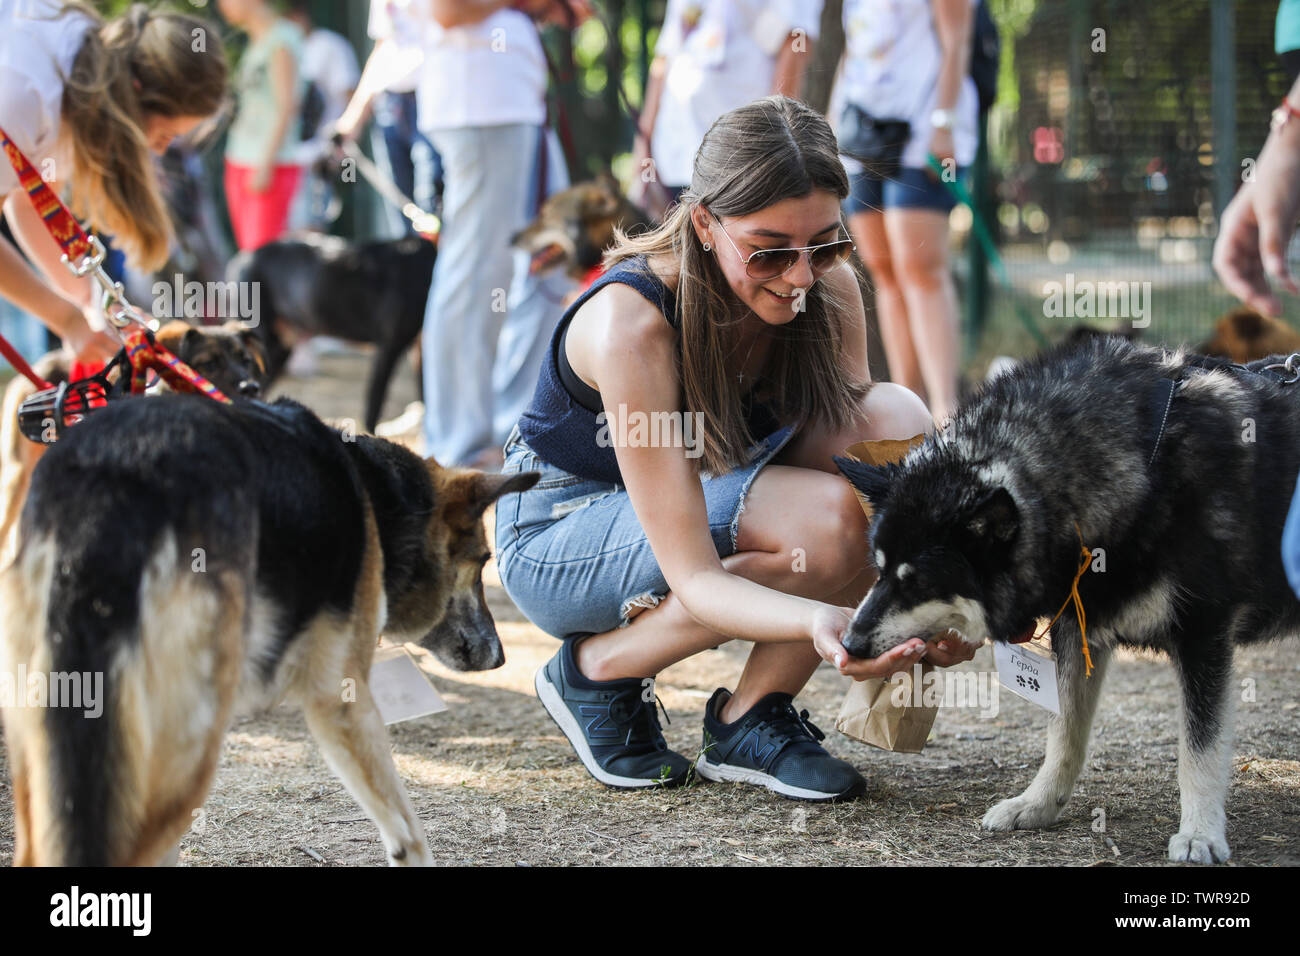 Moscú, Rusia. 22 de junio de 2019. Una mujer alimenta a un perro durante el  'Día de amigos' festival benéfico en un parque a las afueras de Moscú,  Rusia, el 22 de